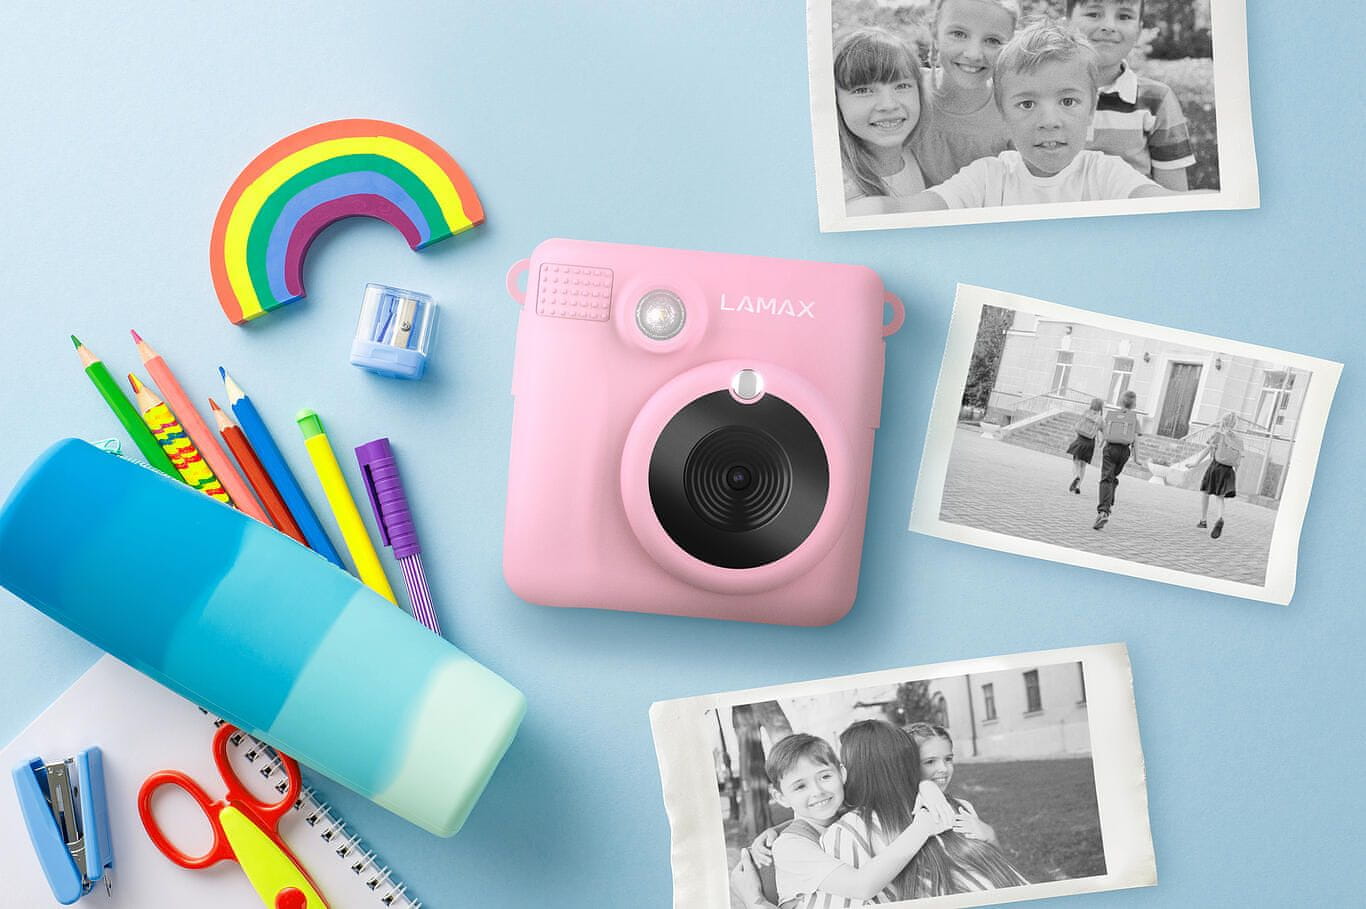  Instant kamera za djecu Lamax Instakid1 lijepog dizajna rola termalnog papira sjajni efekti i okviri punjiva baterija igre rezolucija 8 mpx 